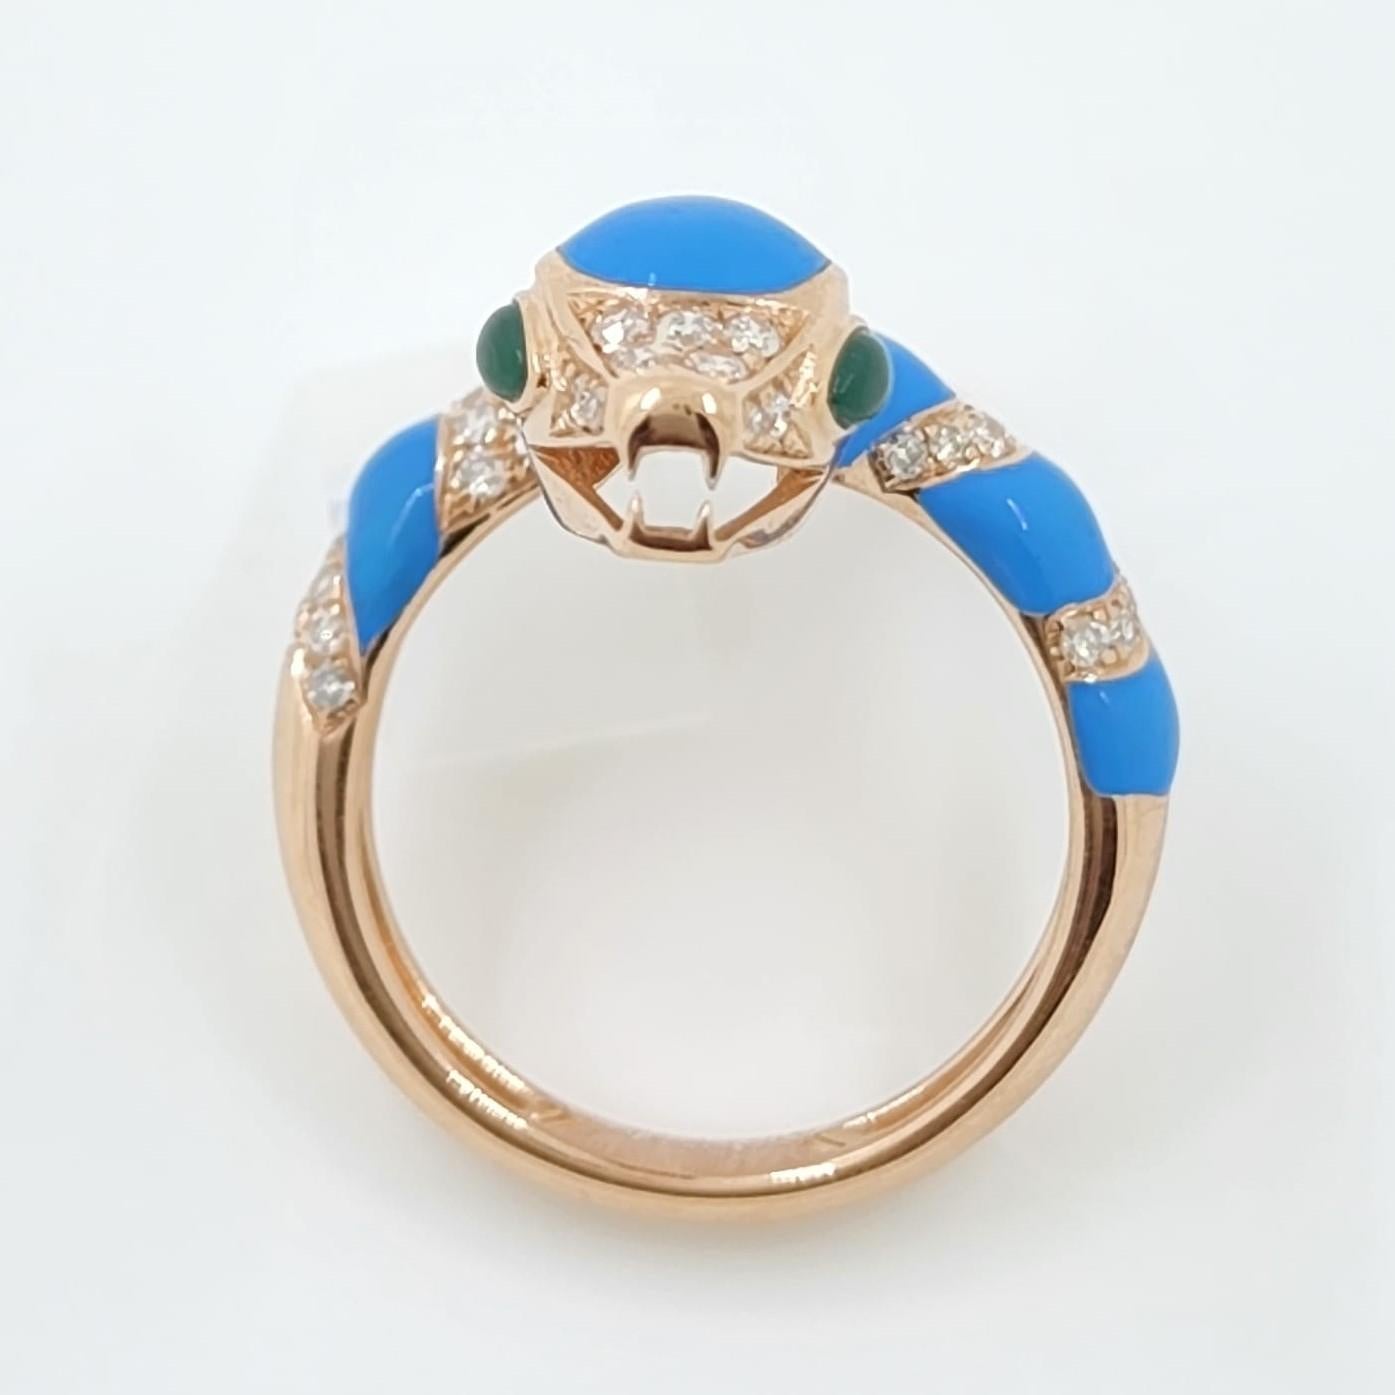 Round Cut Turquoise Color Enamel Snake Diamond Ring in 18 Karat Rose Gold